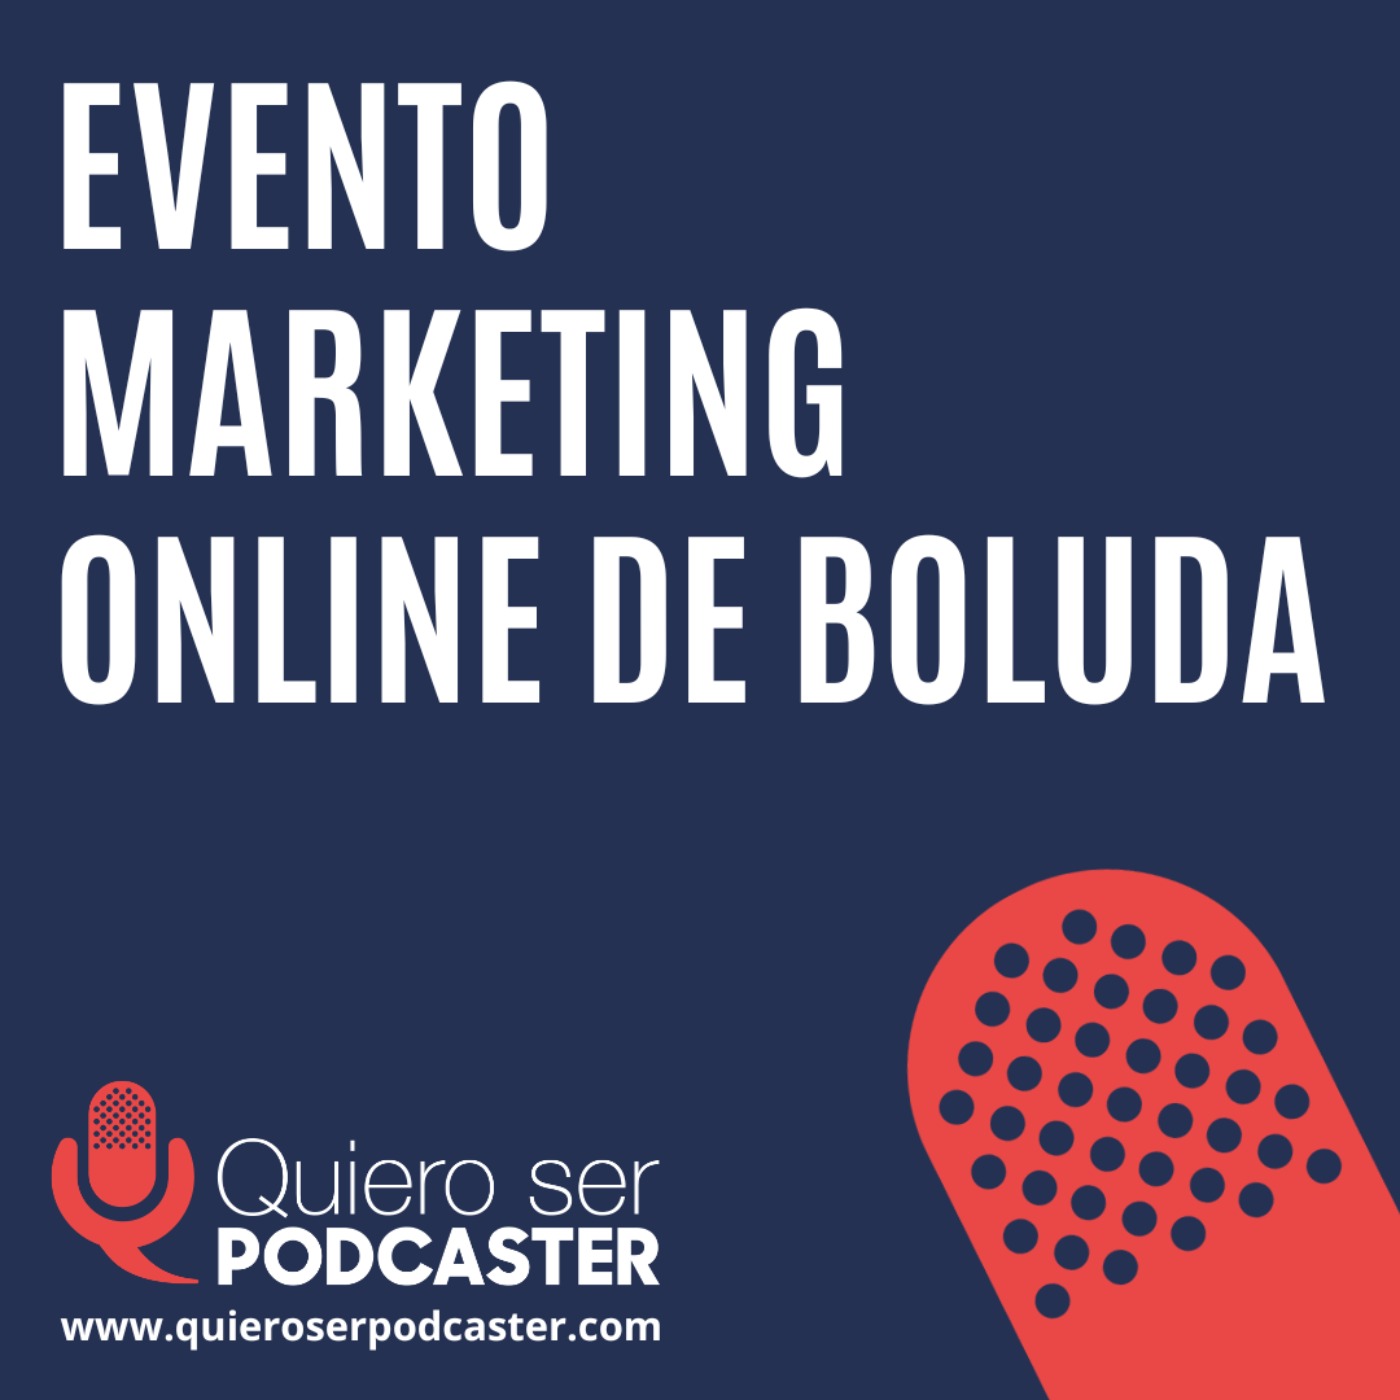 Evento marketing online de BOluda